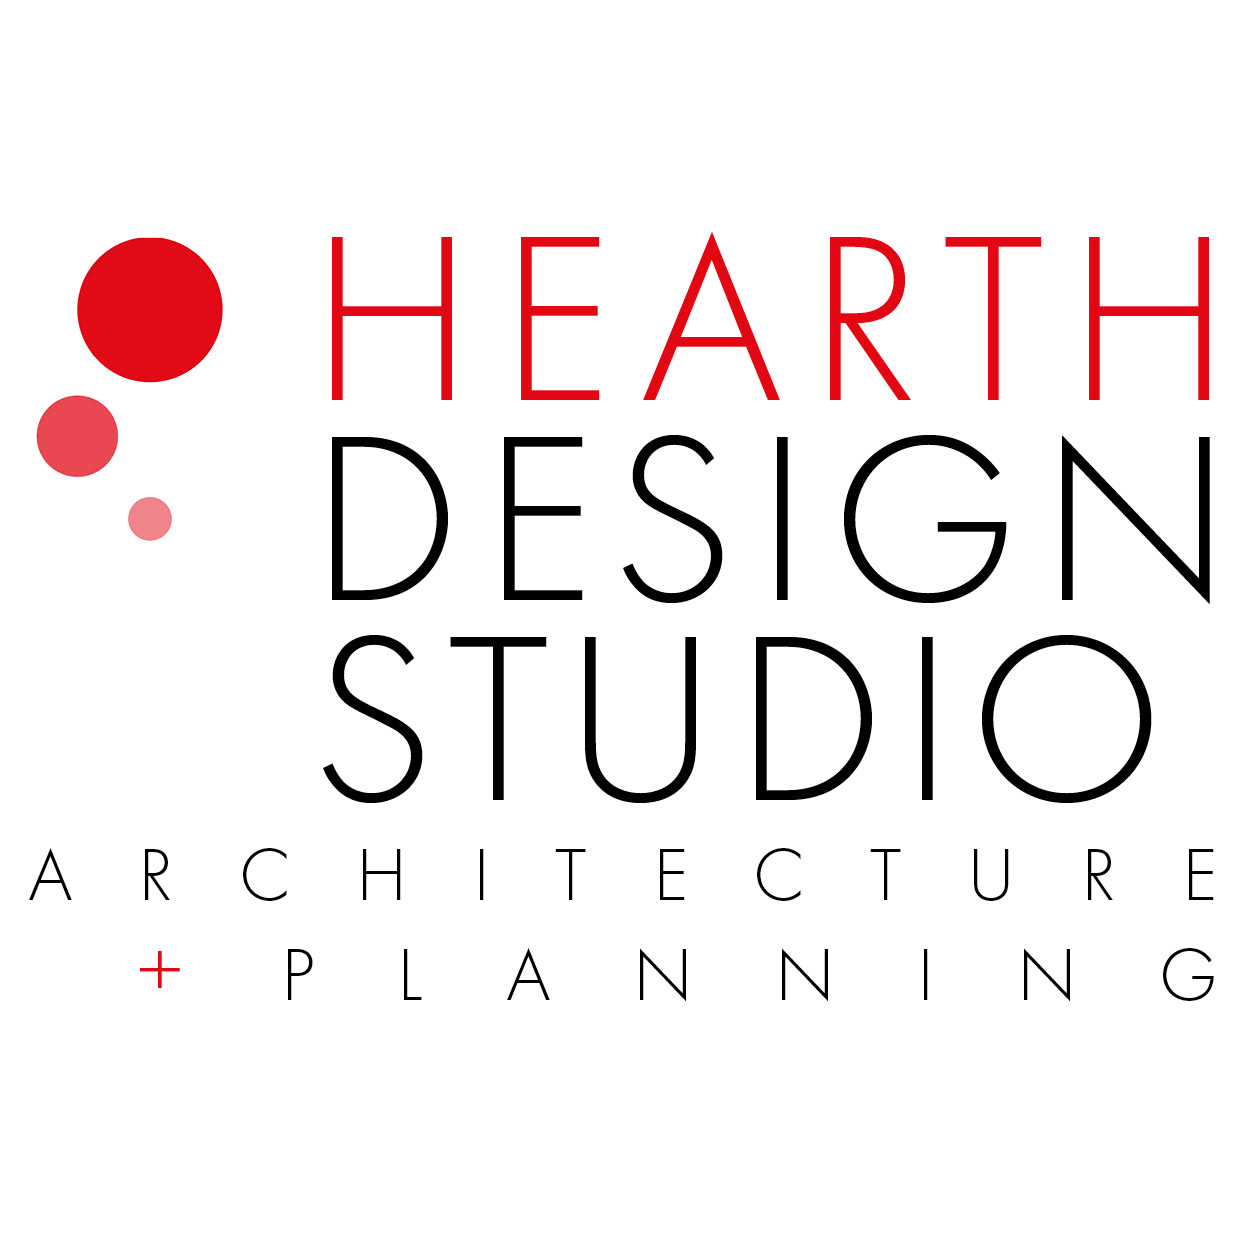 Hearth Design Studio